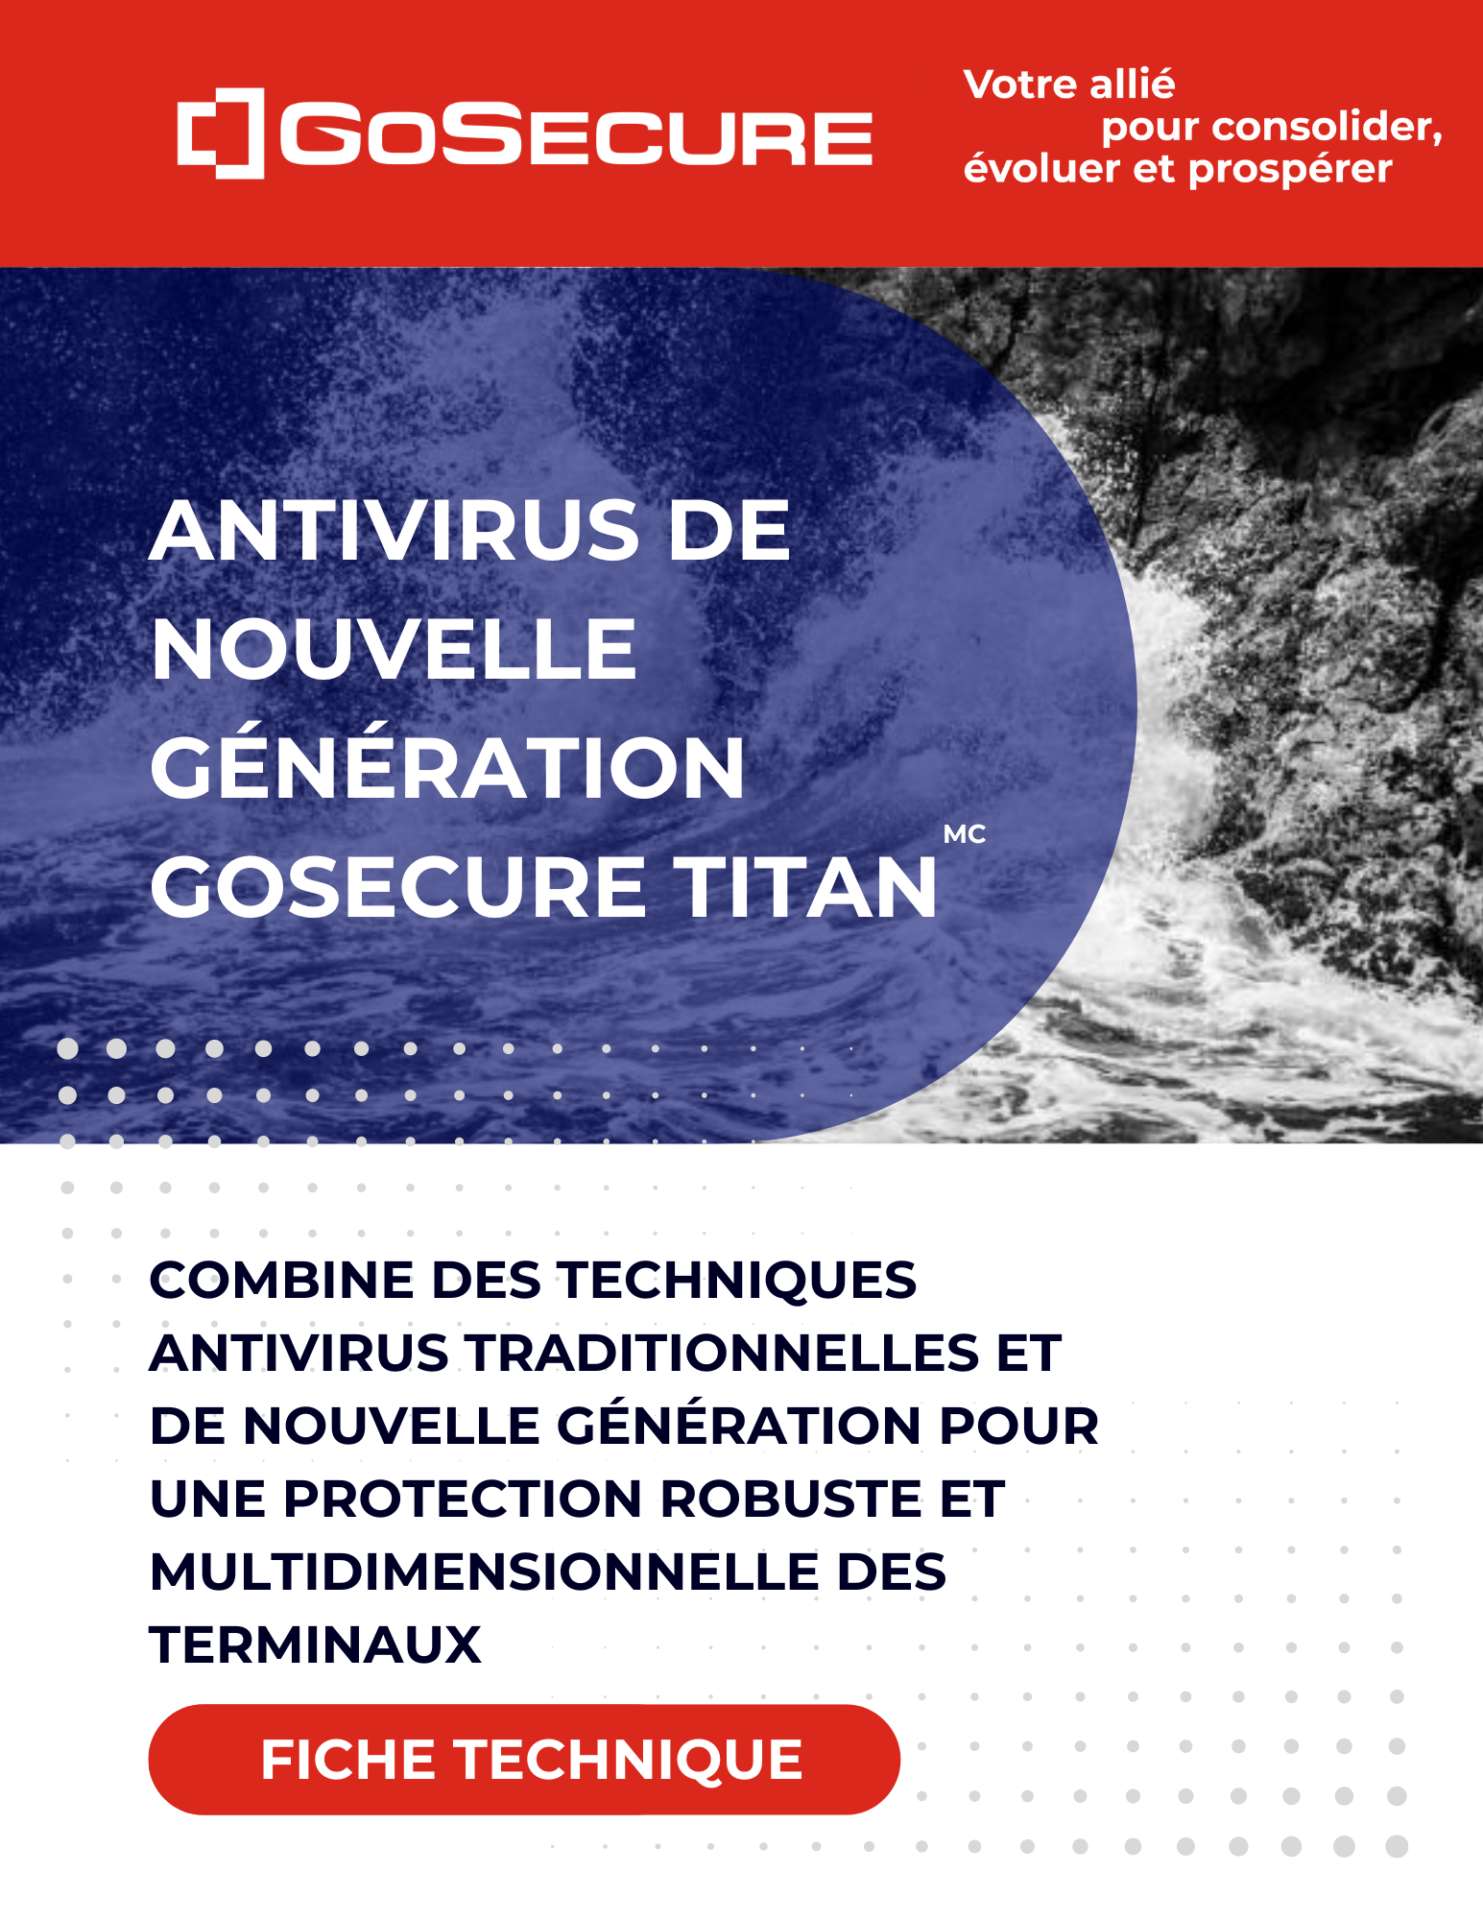 Image de couverture-Fiche technique-Antivirus de nouvelle génération GoSecure Titan